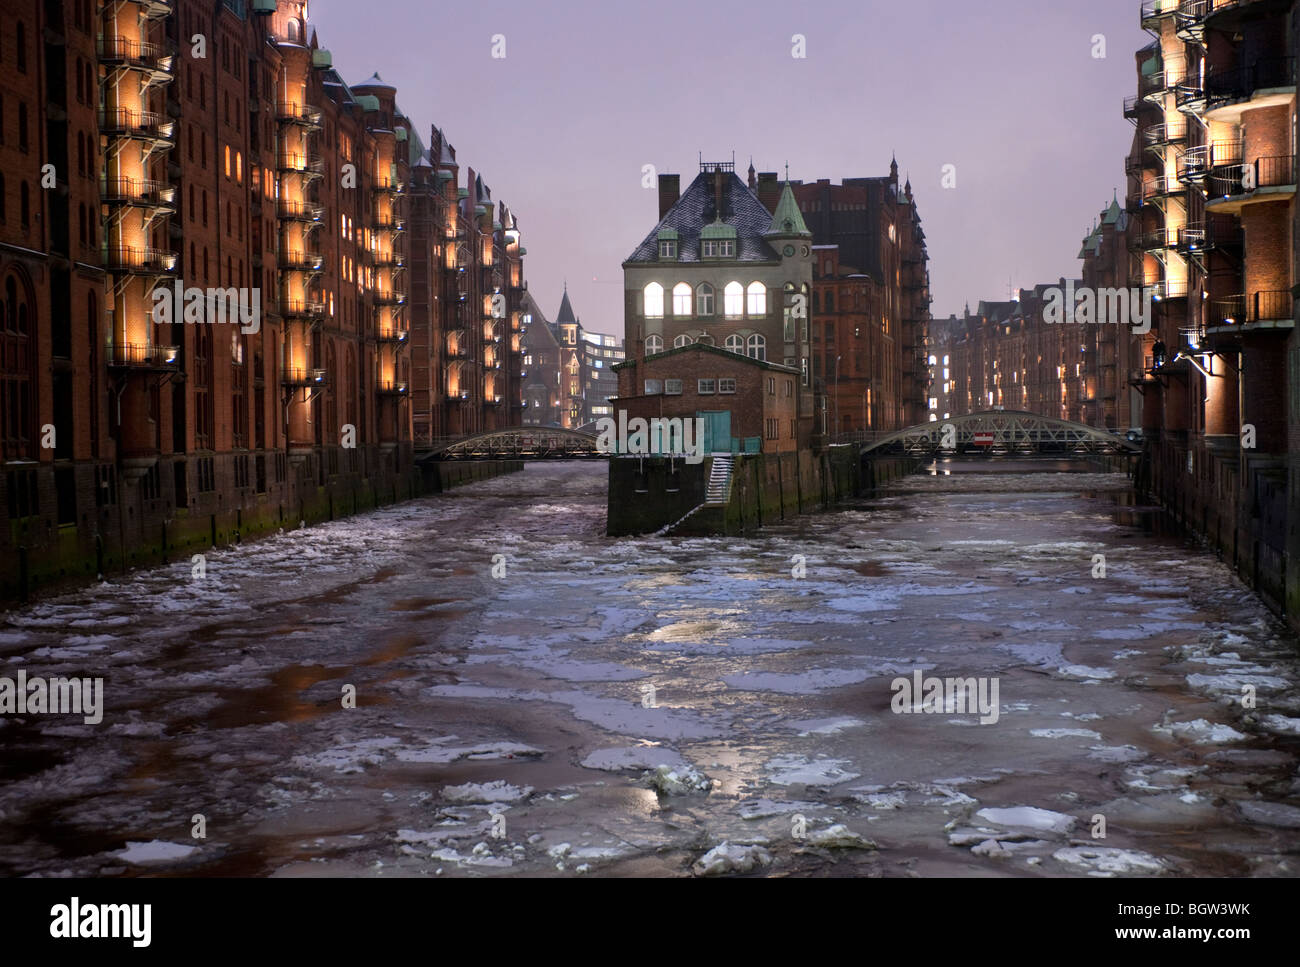 Les canaux gelés en hiver, dans quartier commerçant historique Speicherstadt à Hambourg Allemagne Banque D'Images